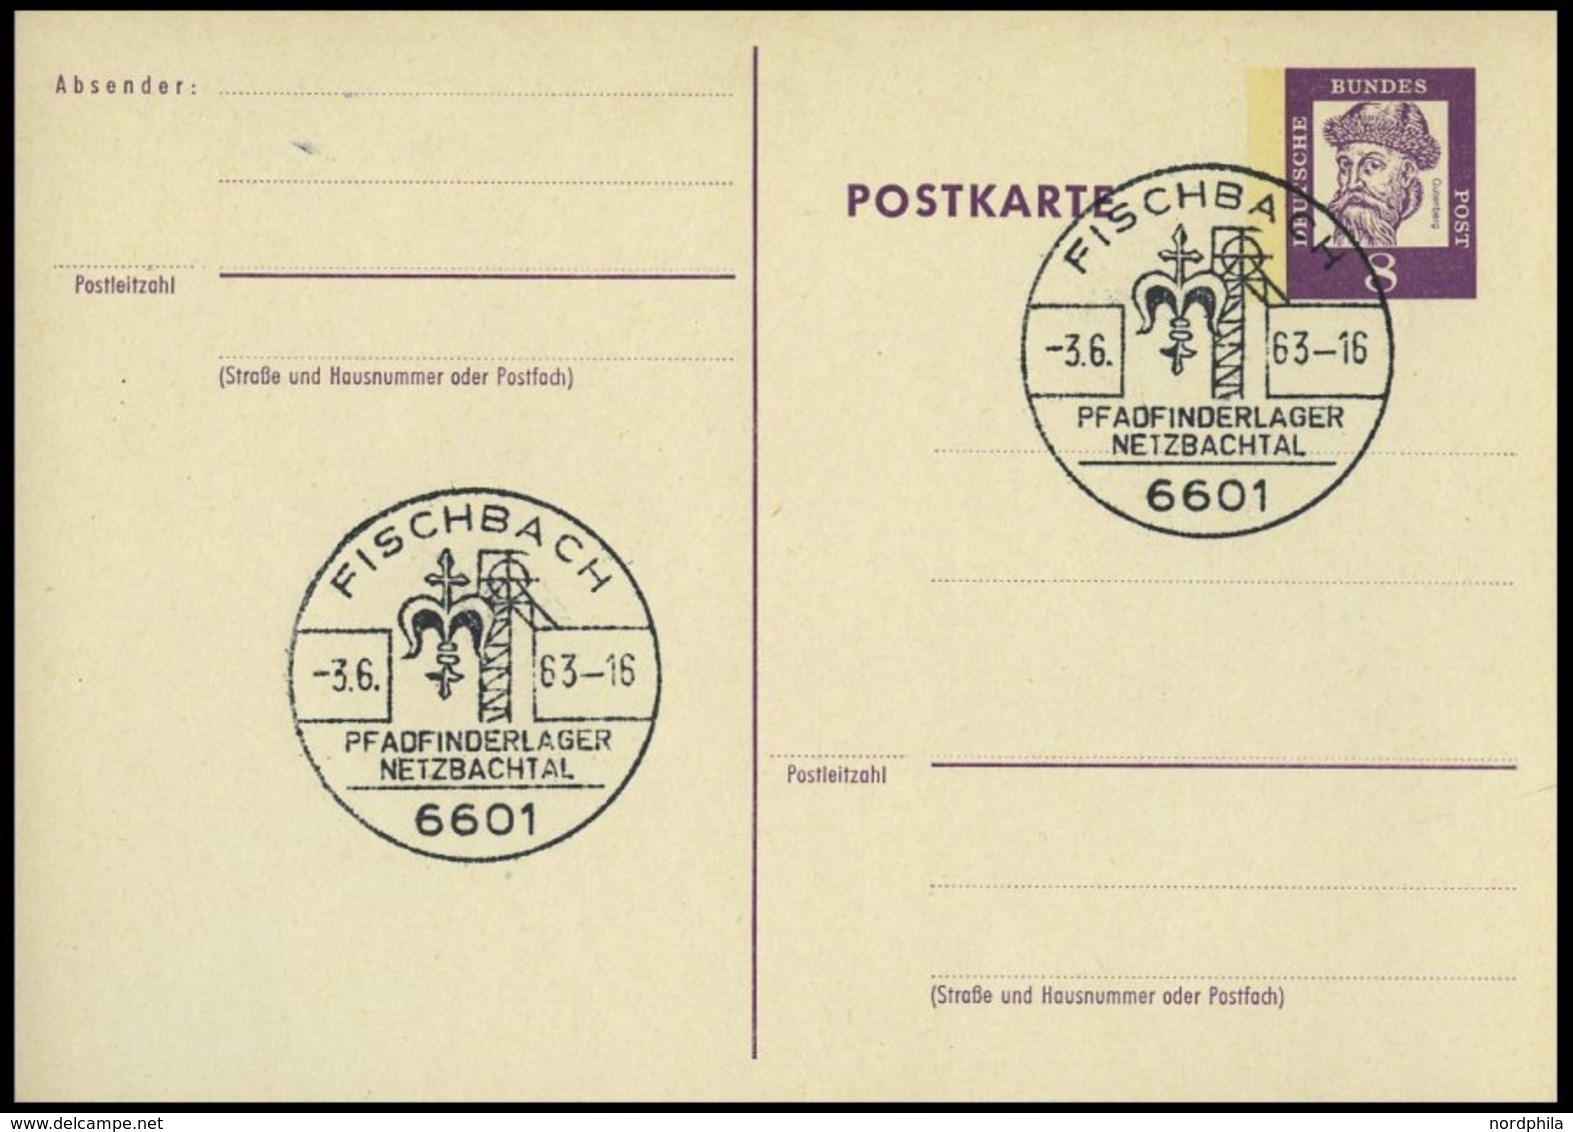 GANZSACHEN P 73 BRIEF, 1962, 8 Pf. Gutenberg, Postkarte In Grotesk-Schrift, Leer Gestempelt Mit Sonderstempel FISCHBACH  - Sammlungen